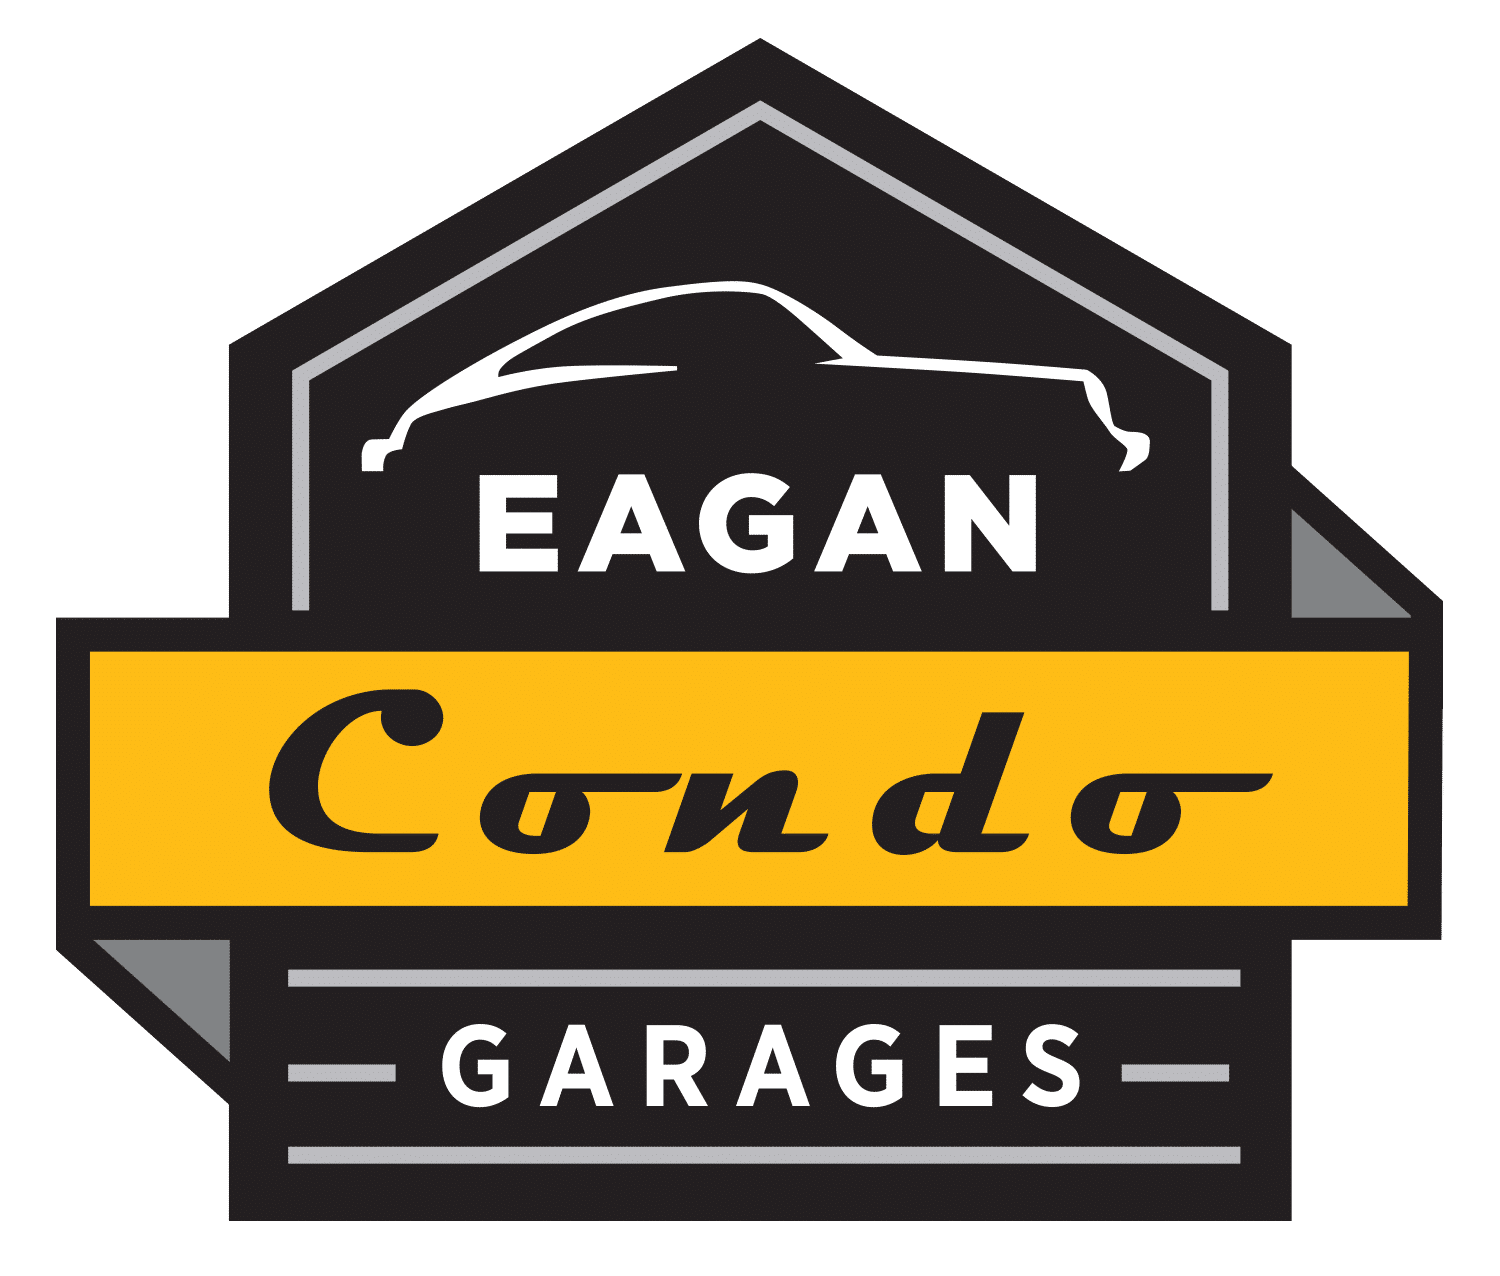 Eagan Condo Garages